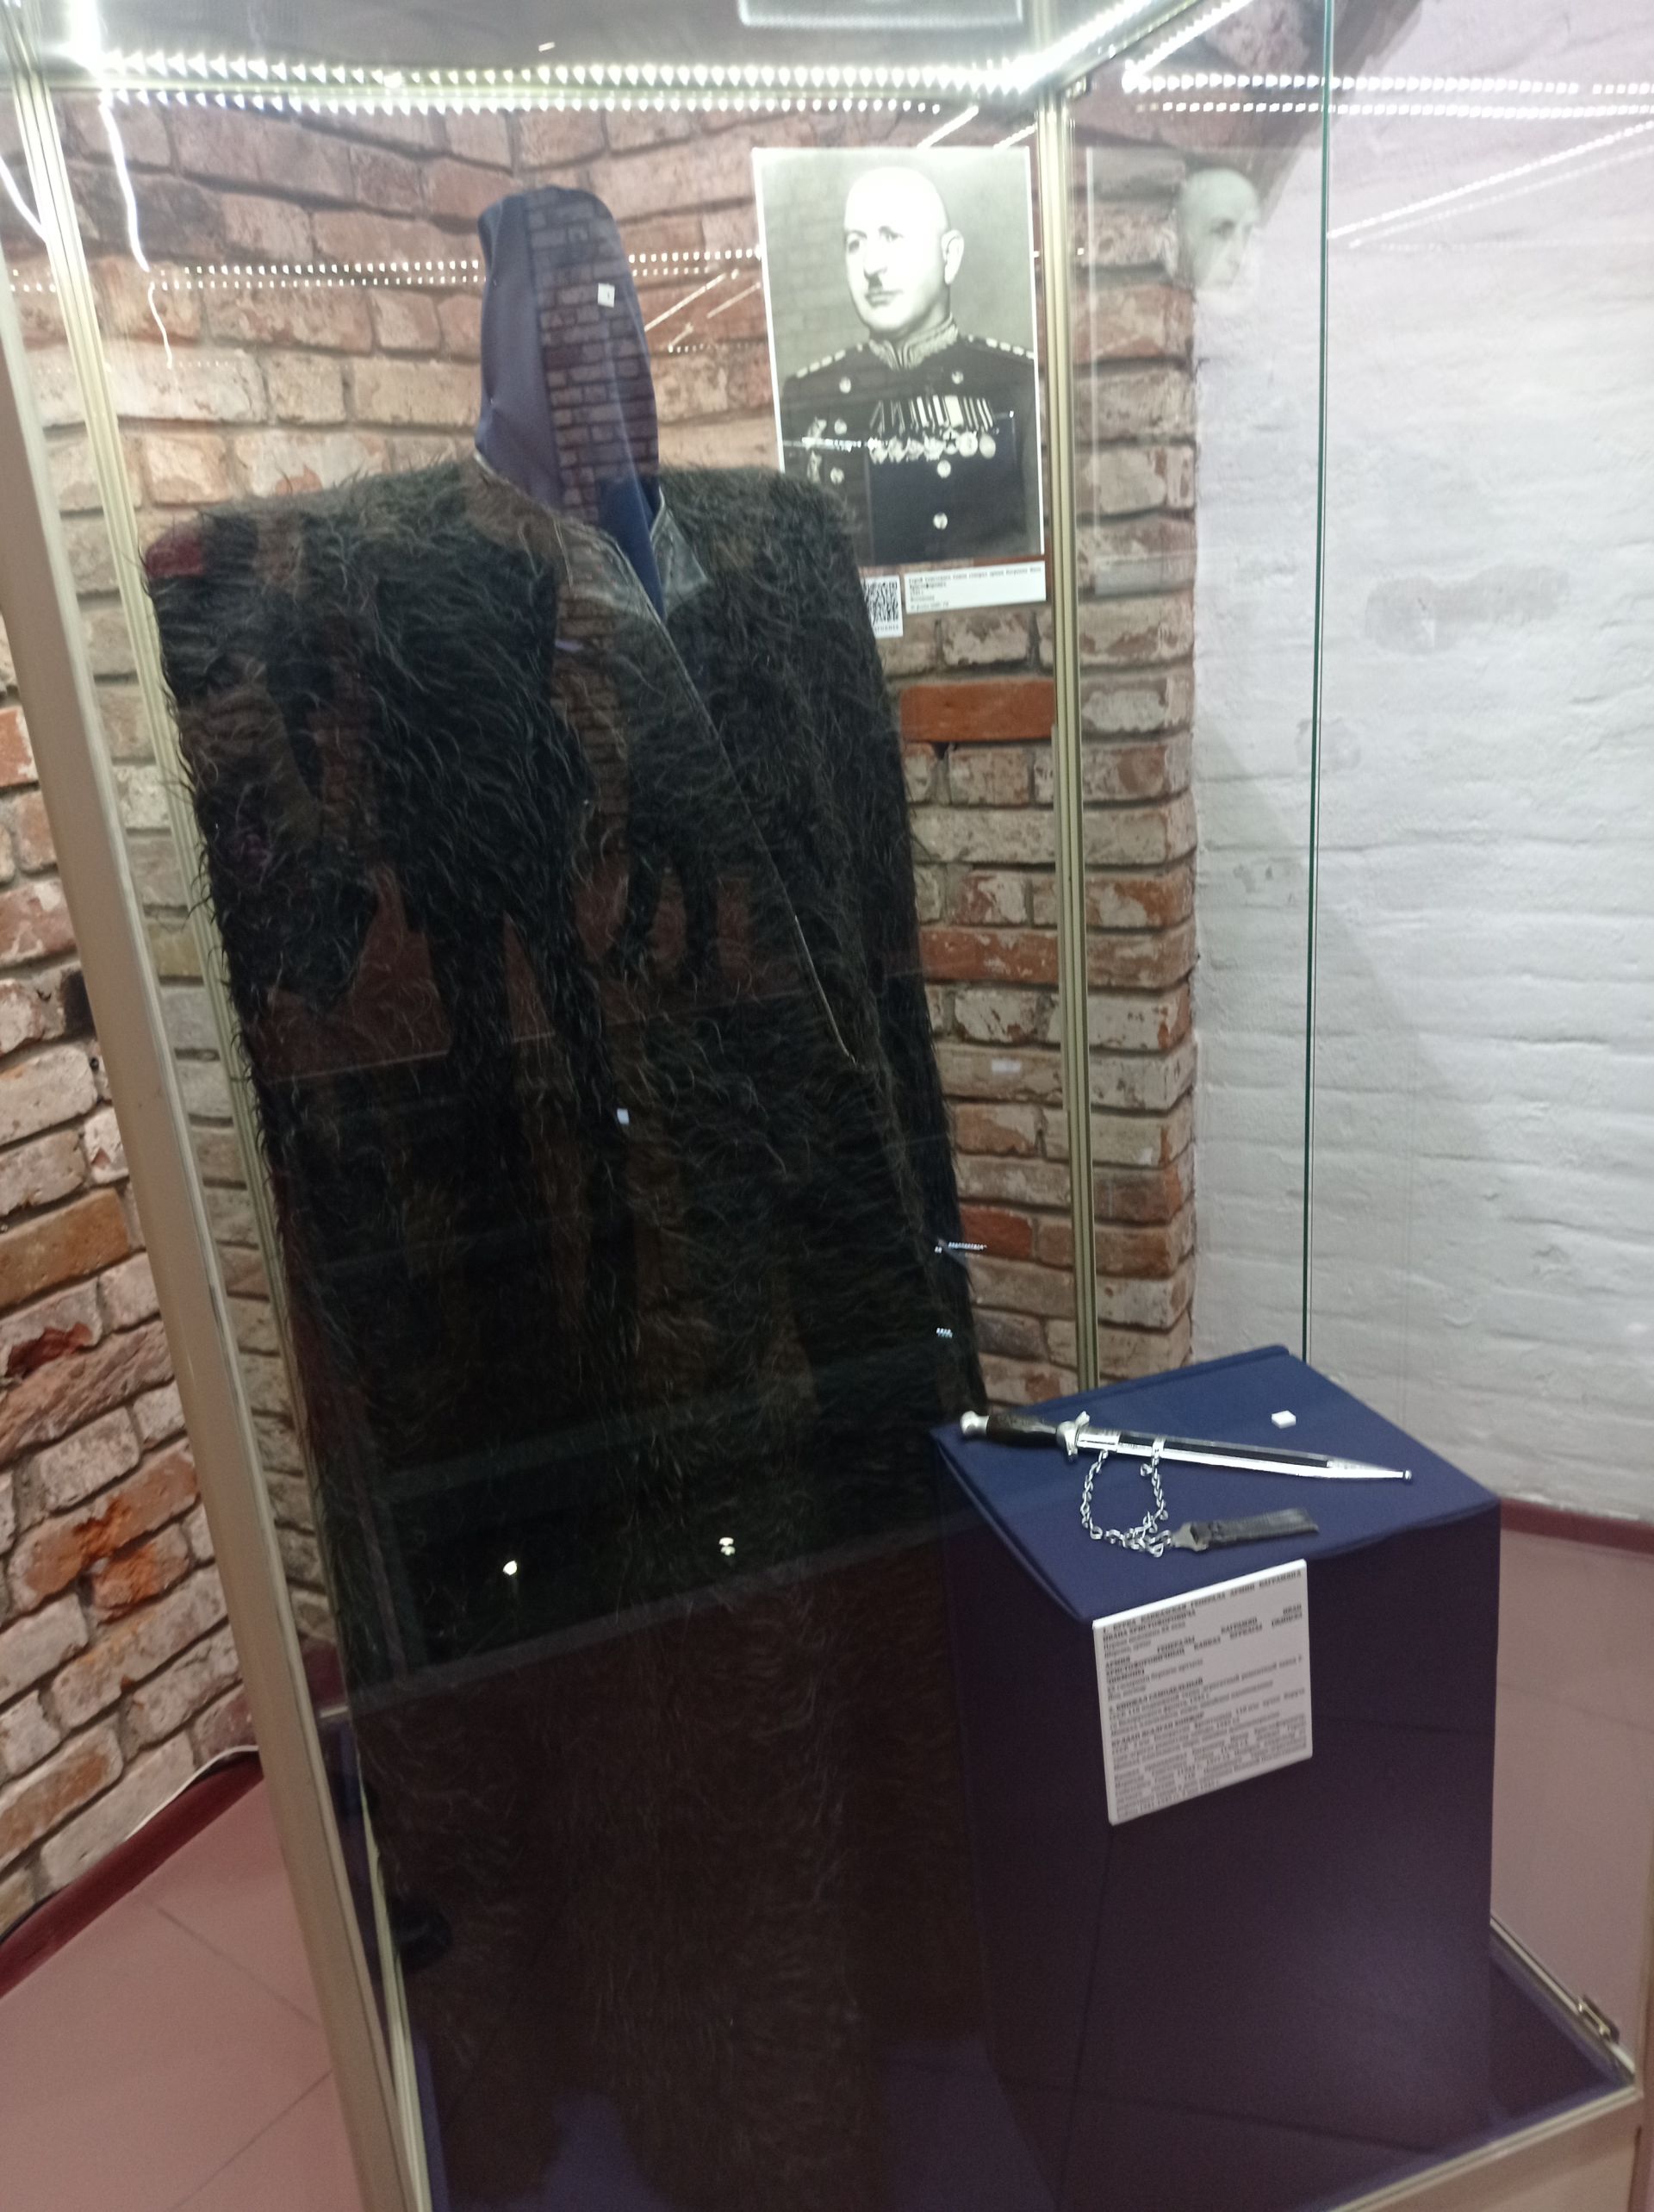 В Музее Пушечного двора открылась выставка образцов наградного и подарочного оружия